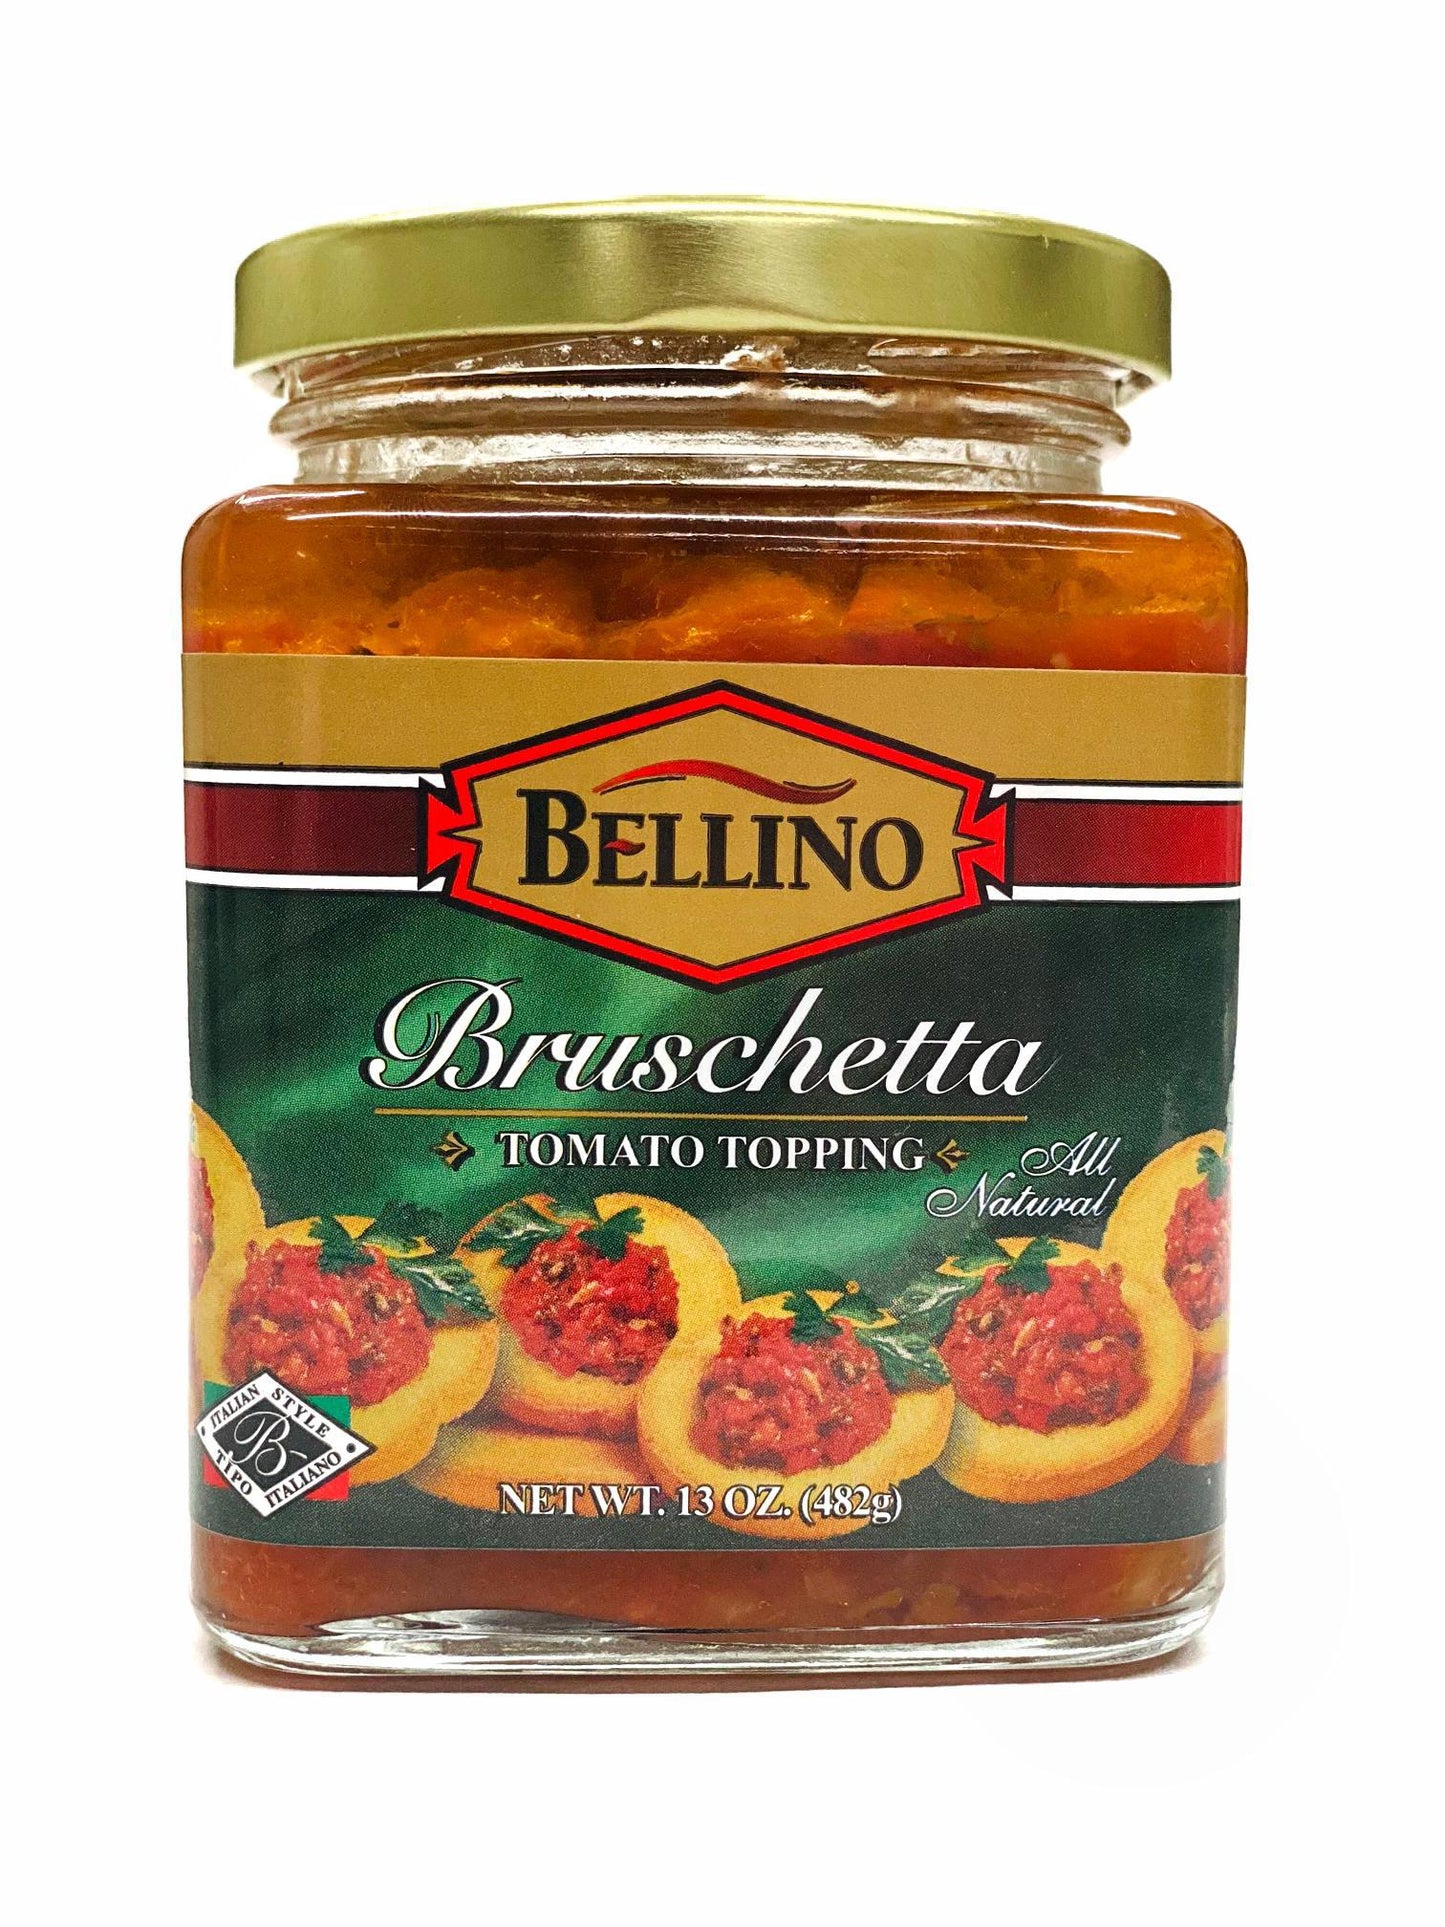 Bellino Bruschetta, 13 oz